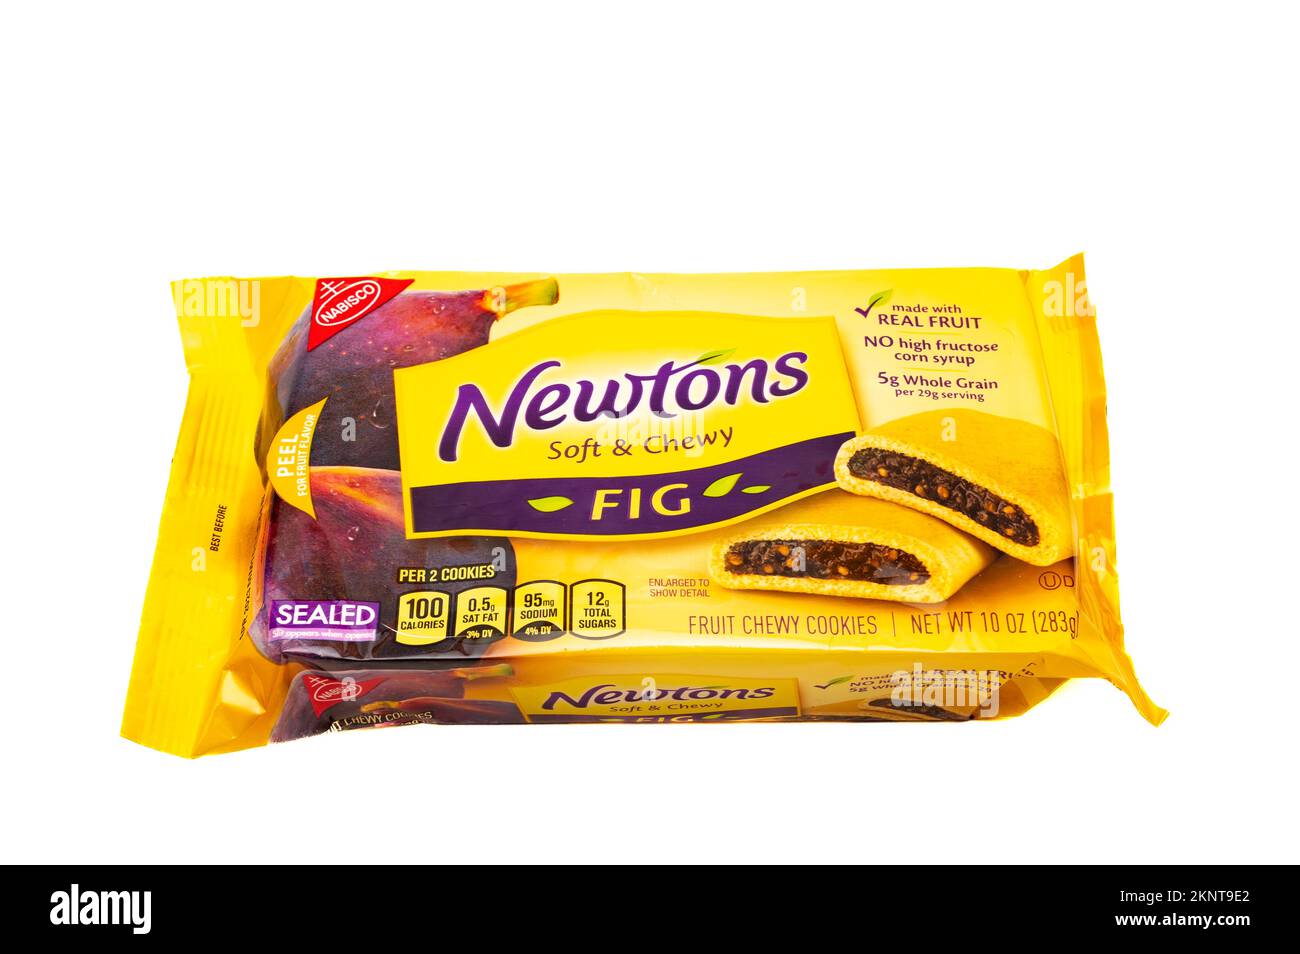 Un pacchetto di Nabisco marchio Fig Newtons, morbido & masticato, fatto con vero frutto, isolato su bianco Foto Stock